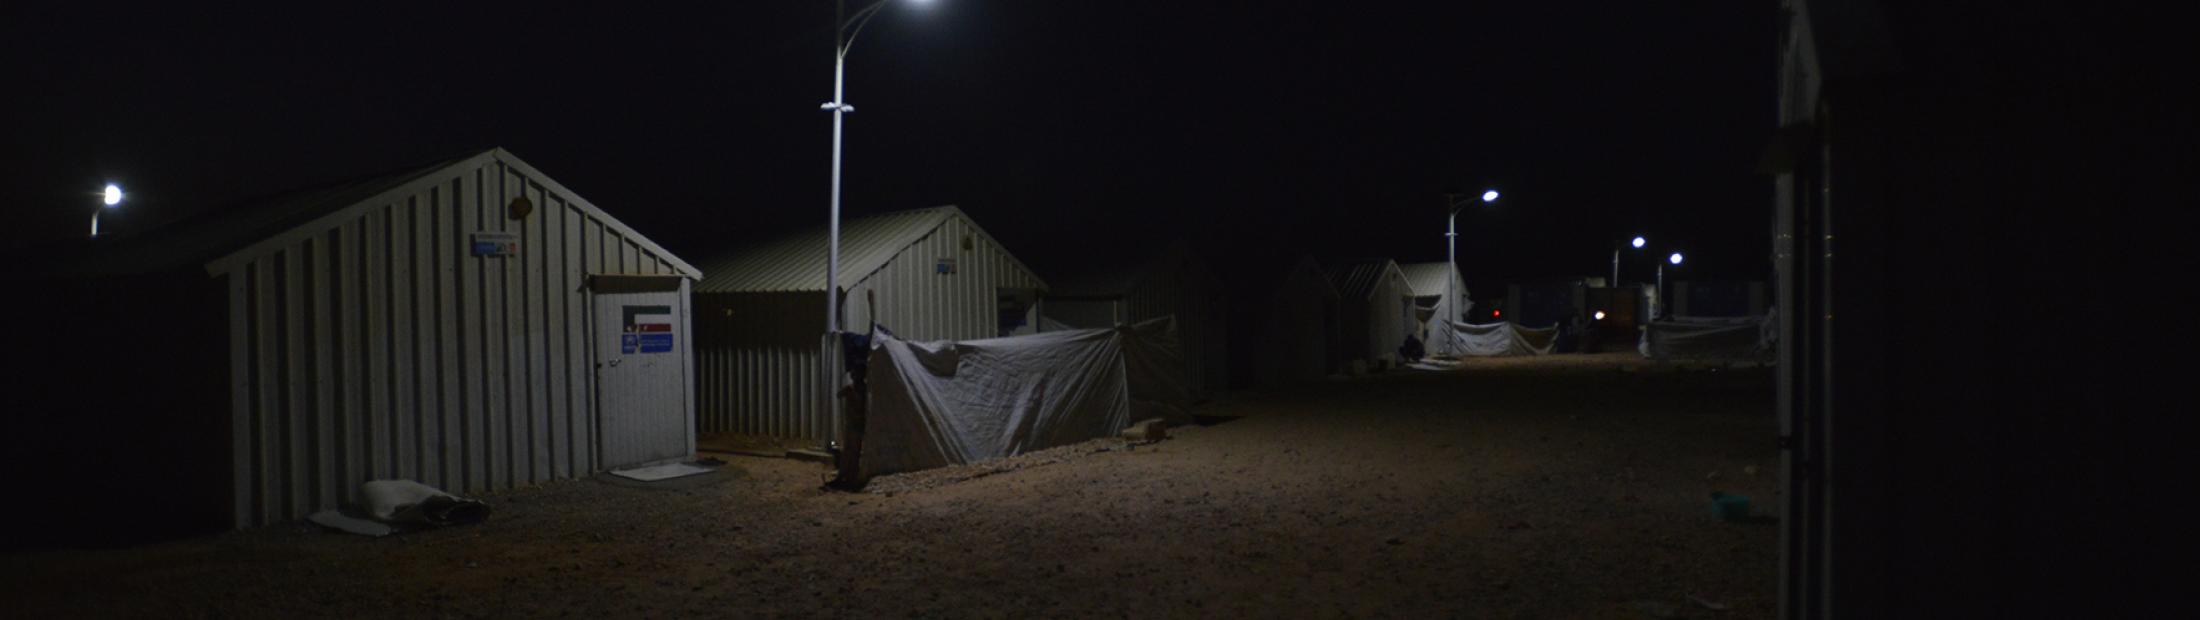 Refugiados con luz eléctrica: 5 cosas que no podrían hacer sin ella